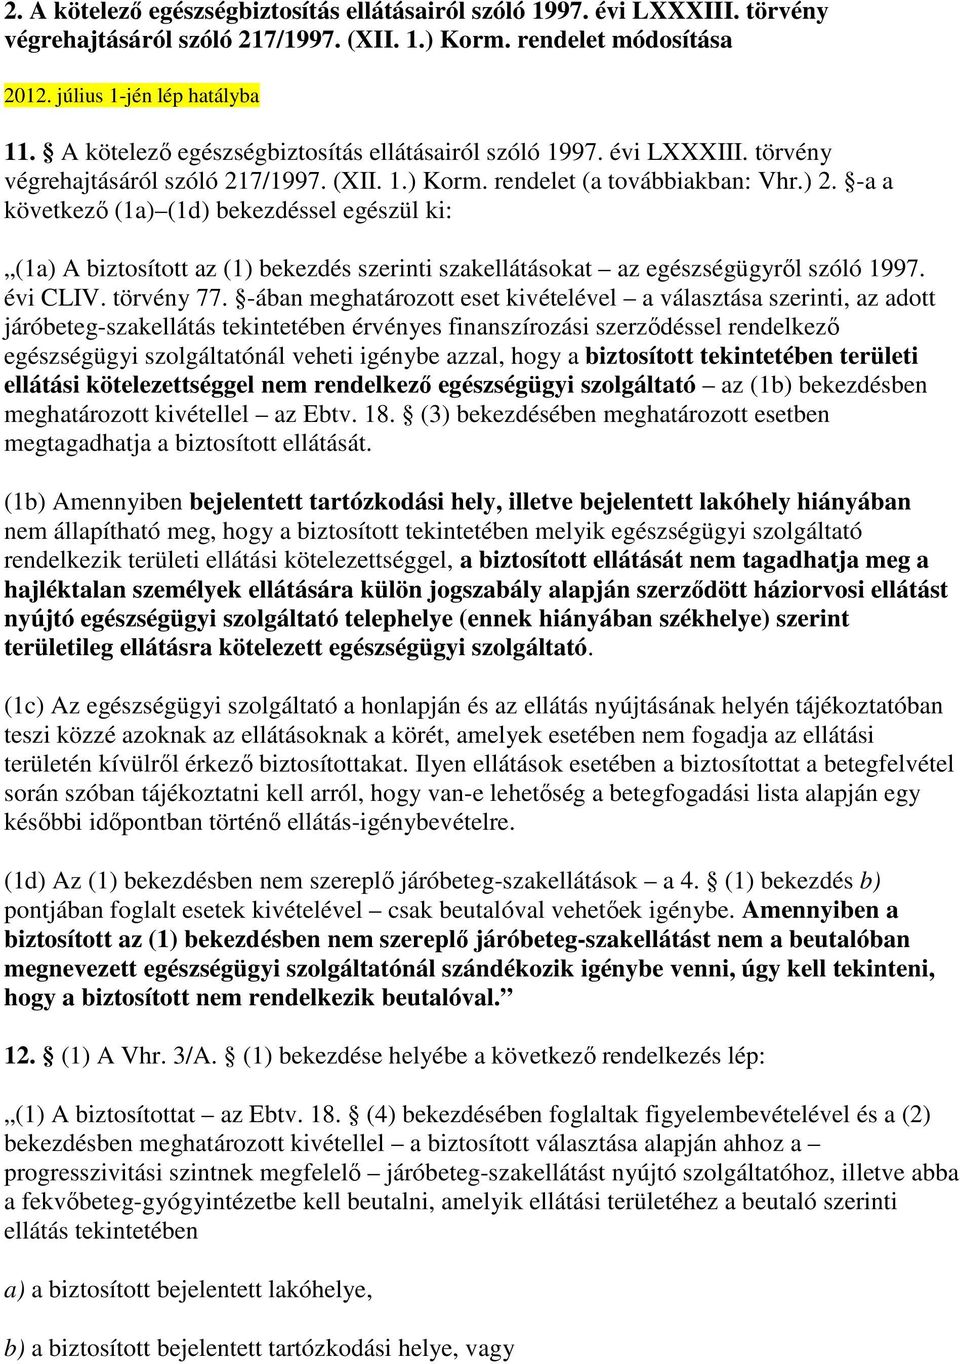 -a a következı (1a) (1d) bekezdéssel egészül ki: (1a) A biztosított az (1) bekezdés szerinti szakellátásokat az egészségügyrıl szóló 1997. évi CLIV. törvény 77.